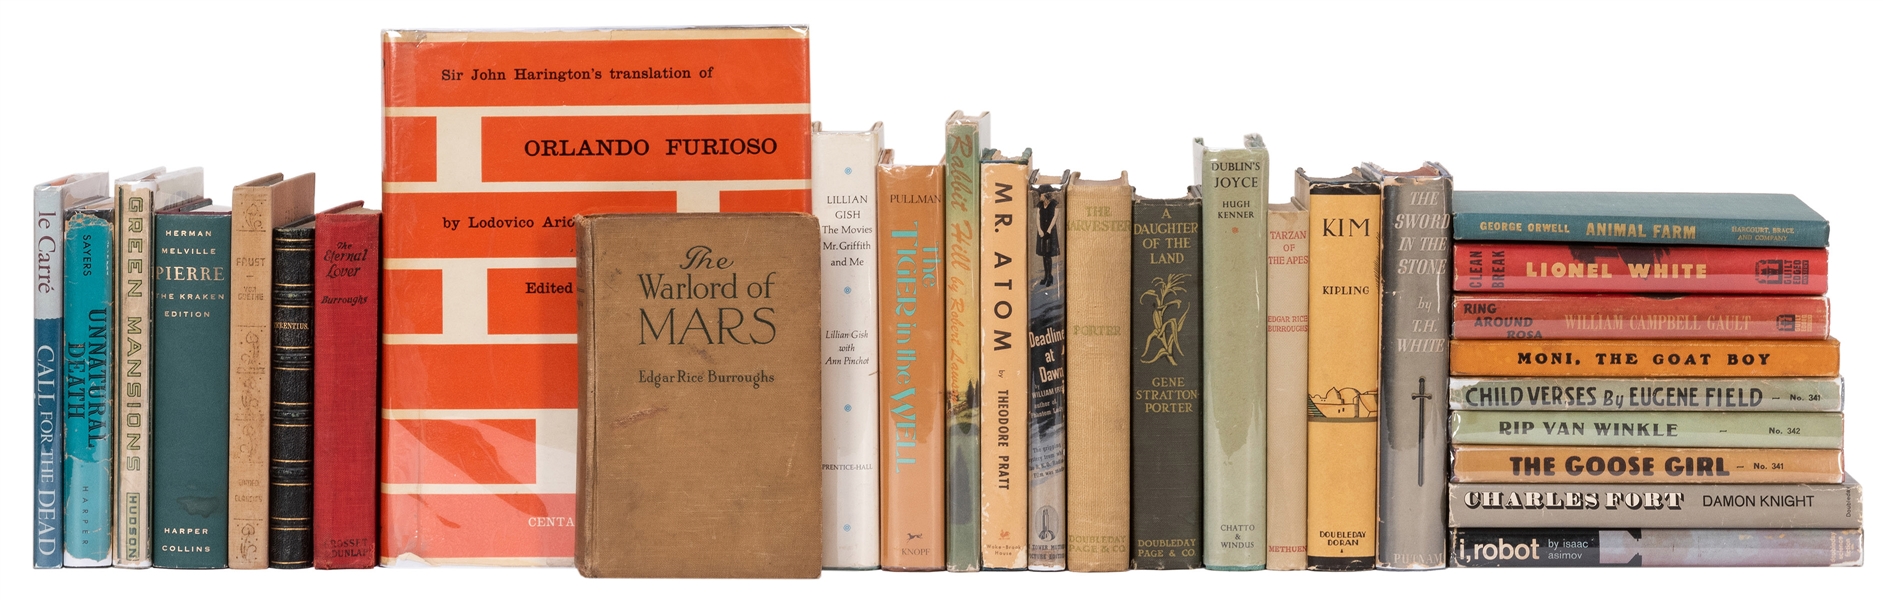  Group of 30 Modern Literature Titles, few signed. Bulk firs...